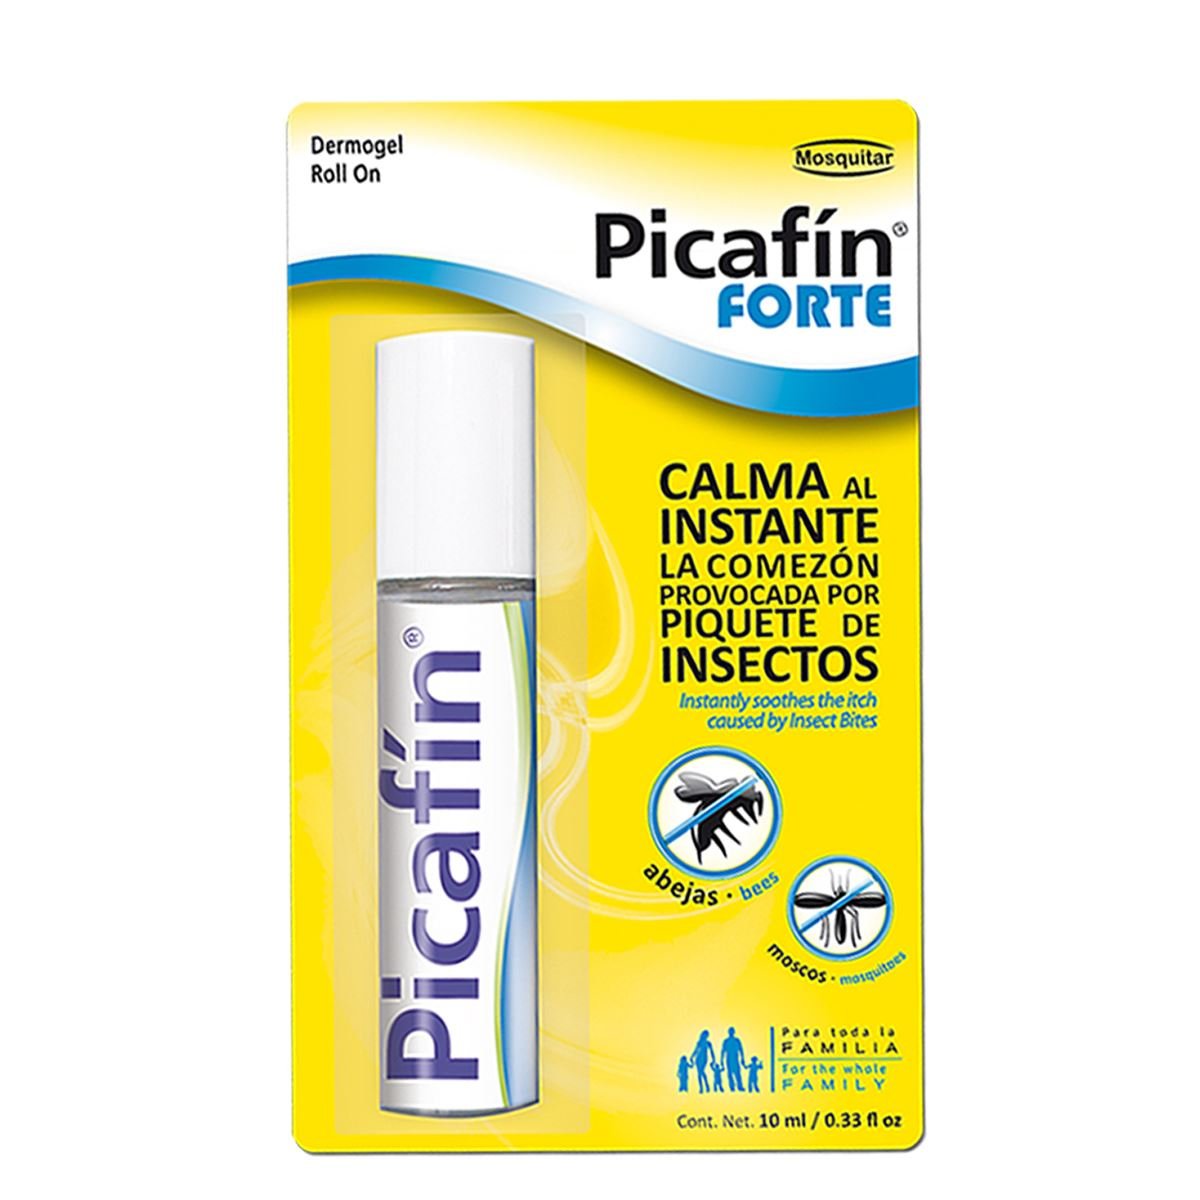 Dermogel Picafin Forte